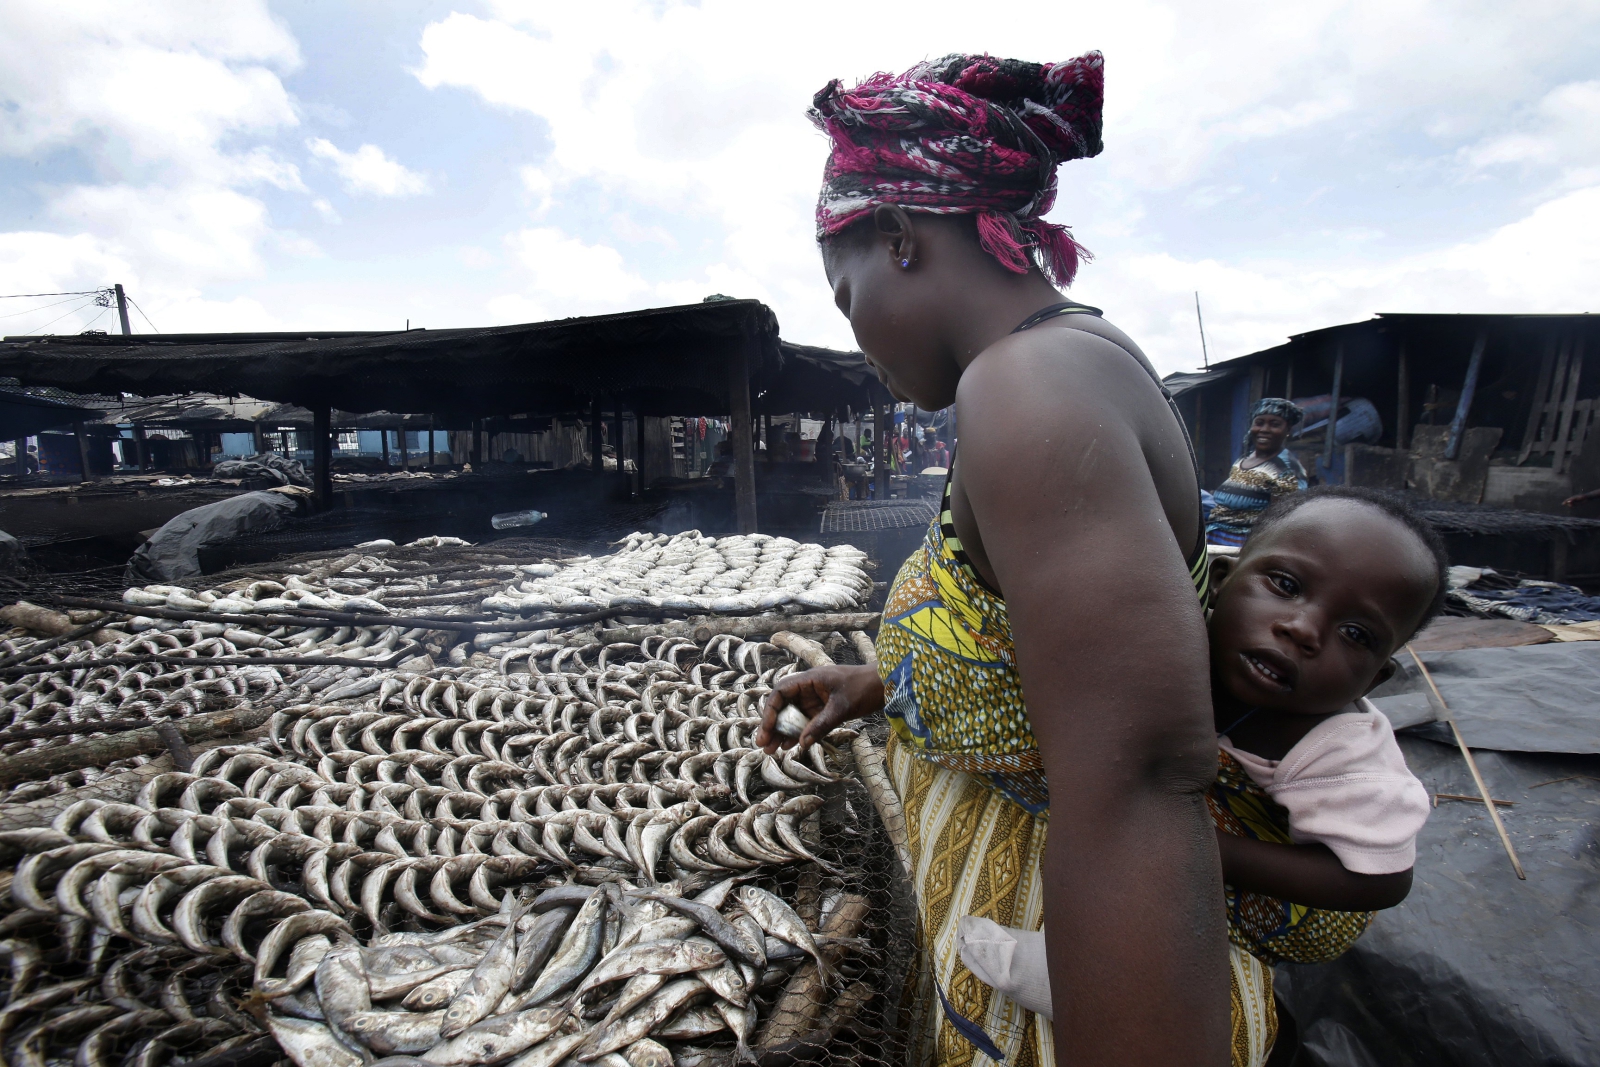 Kobieta pracuje na targu rybnym, Wybrzeże Kości Słoniowej.